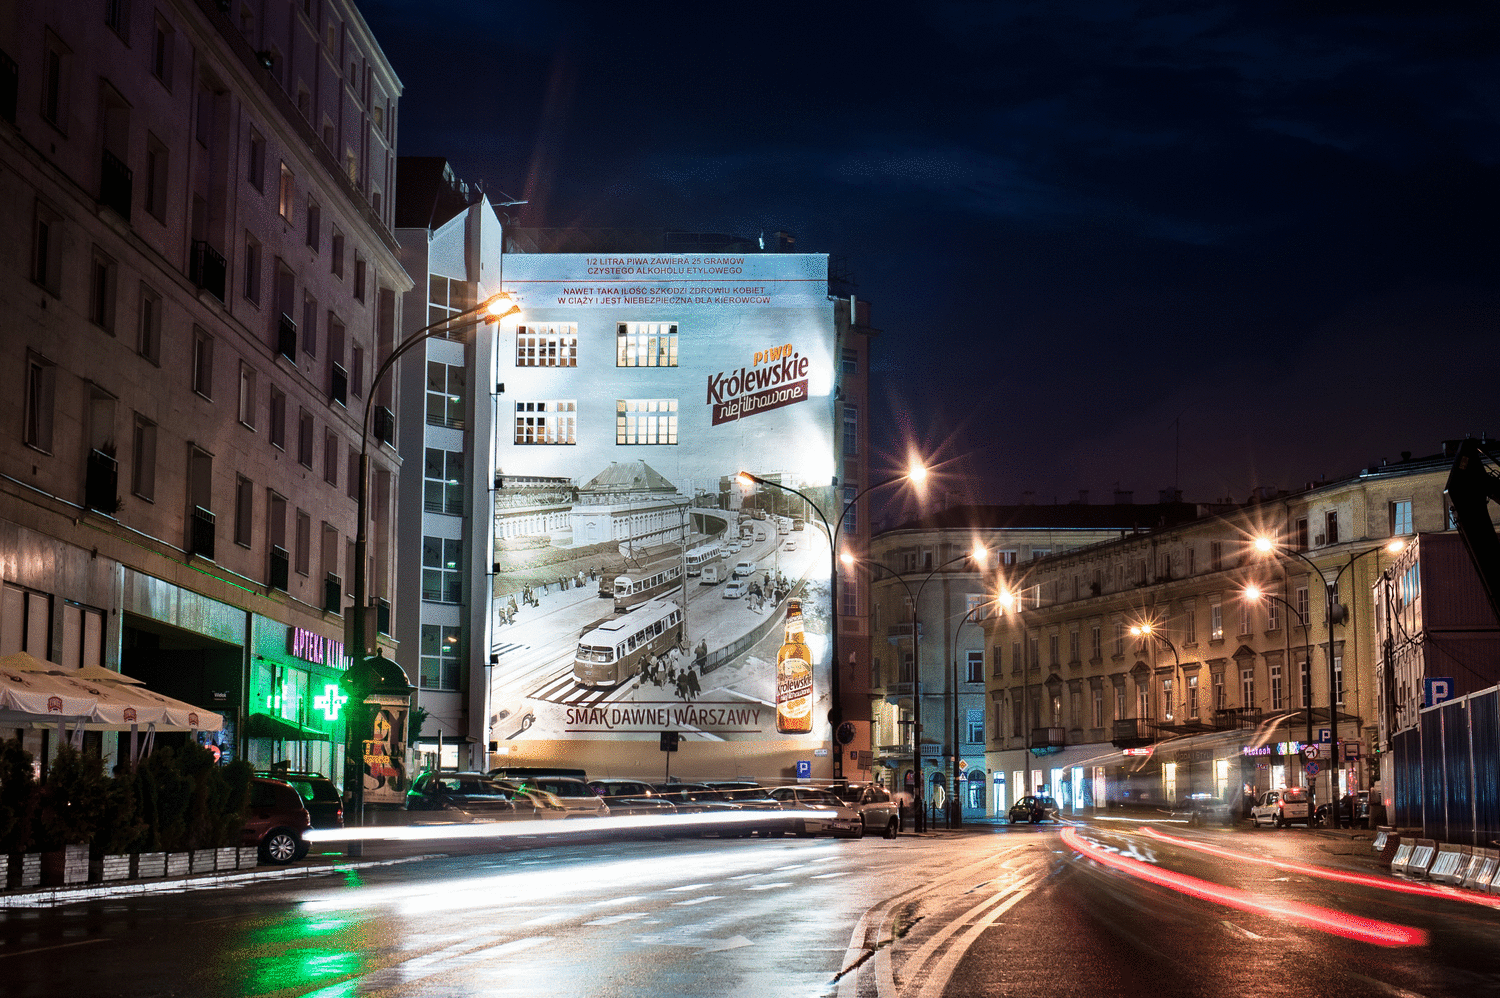 Das Mural als Werbung des Biers Królewskie Nicht filtriert in Warschau, Brackia 25, in der Nacht | Krolewskie niefiltrowane | Portfolio